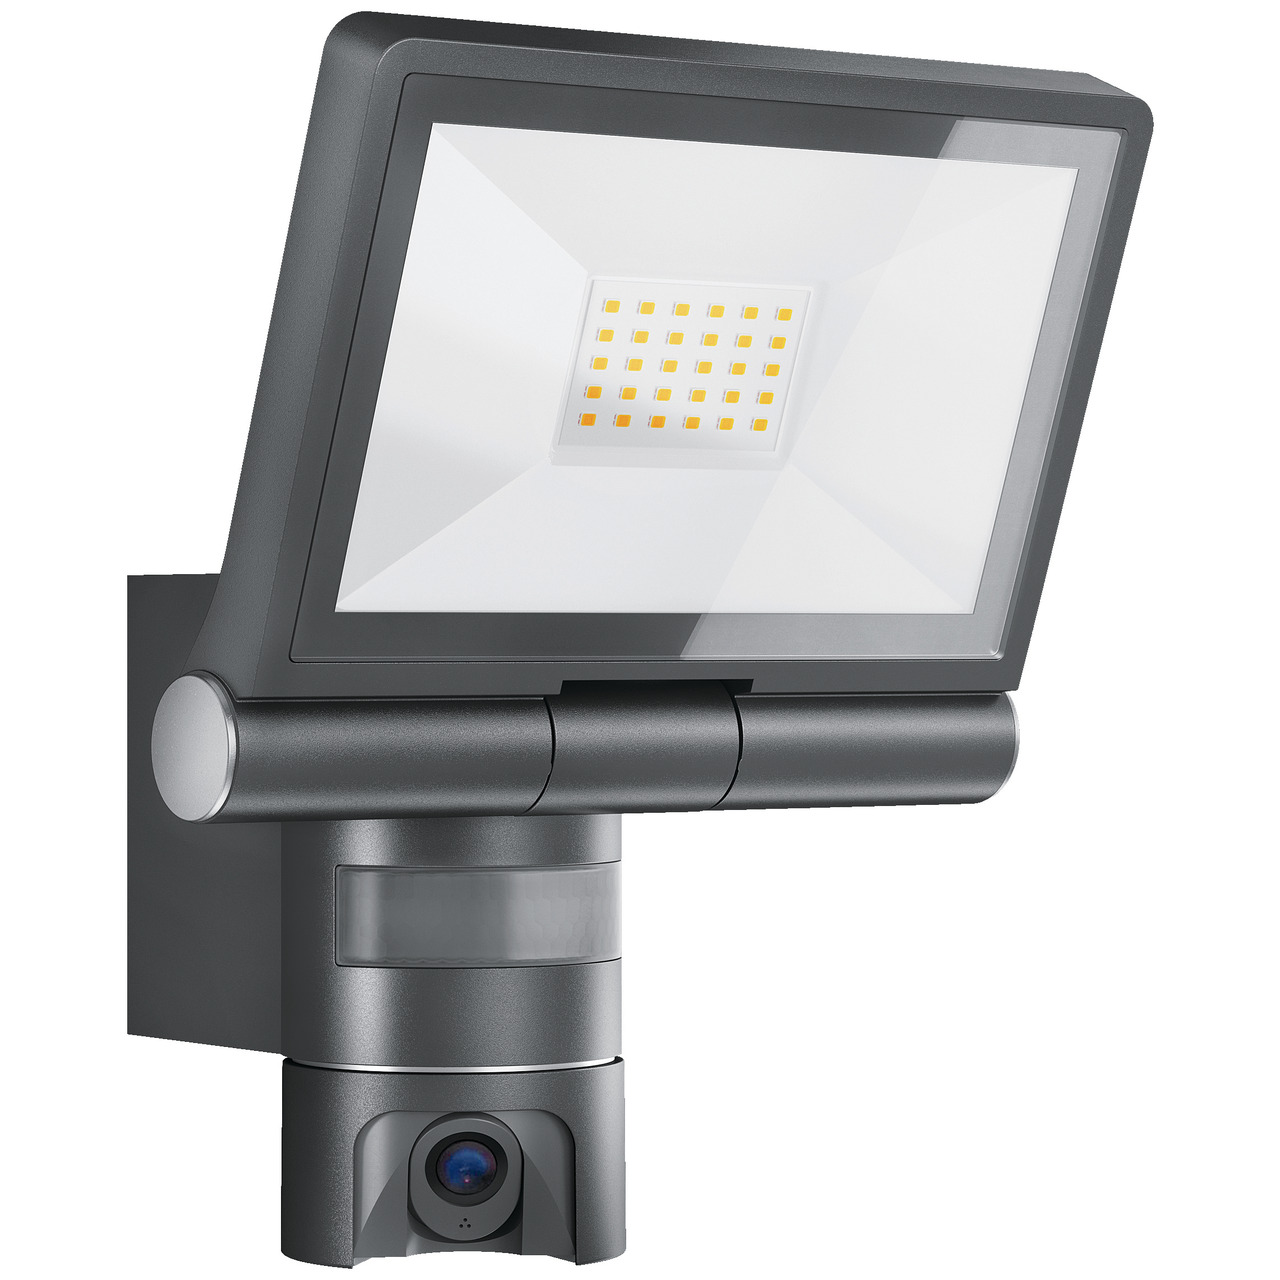 Steinel IP-躡erwachungskamera mit LED-Scheinwerfer XLED CAM1 S ANT- HD (720p)- App